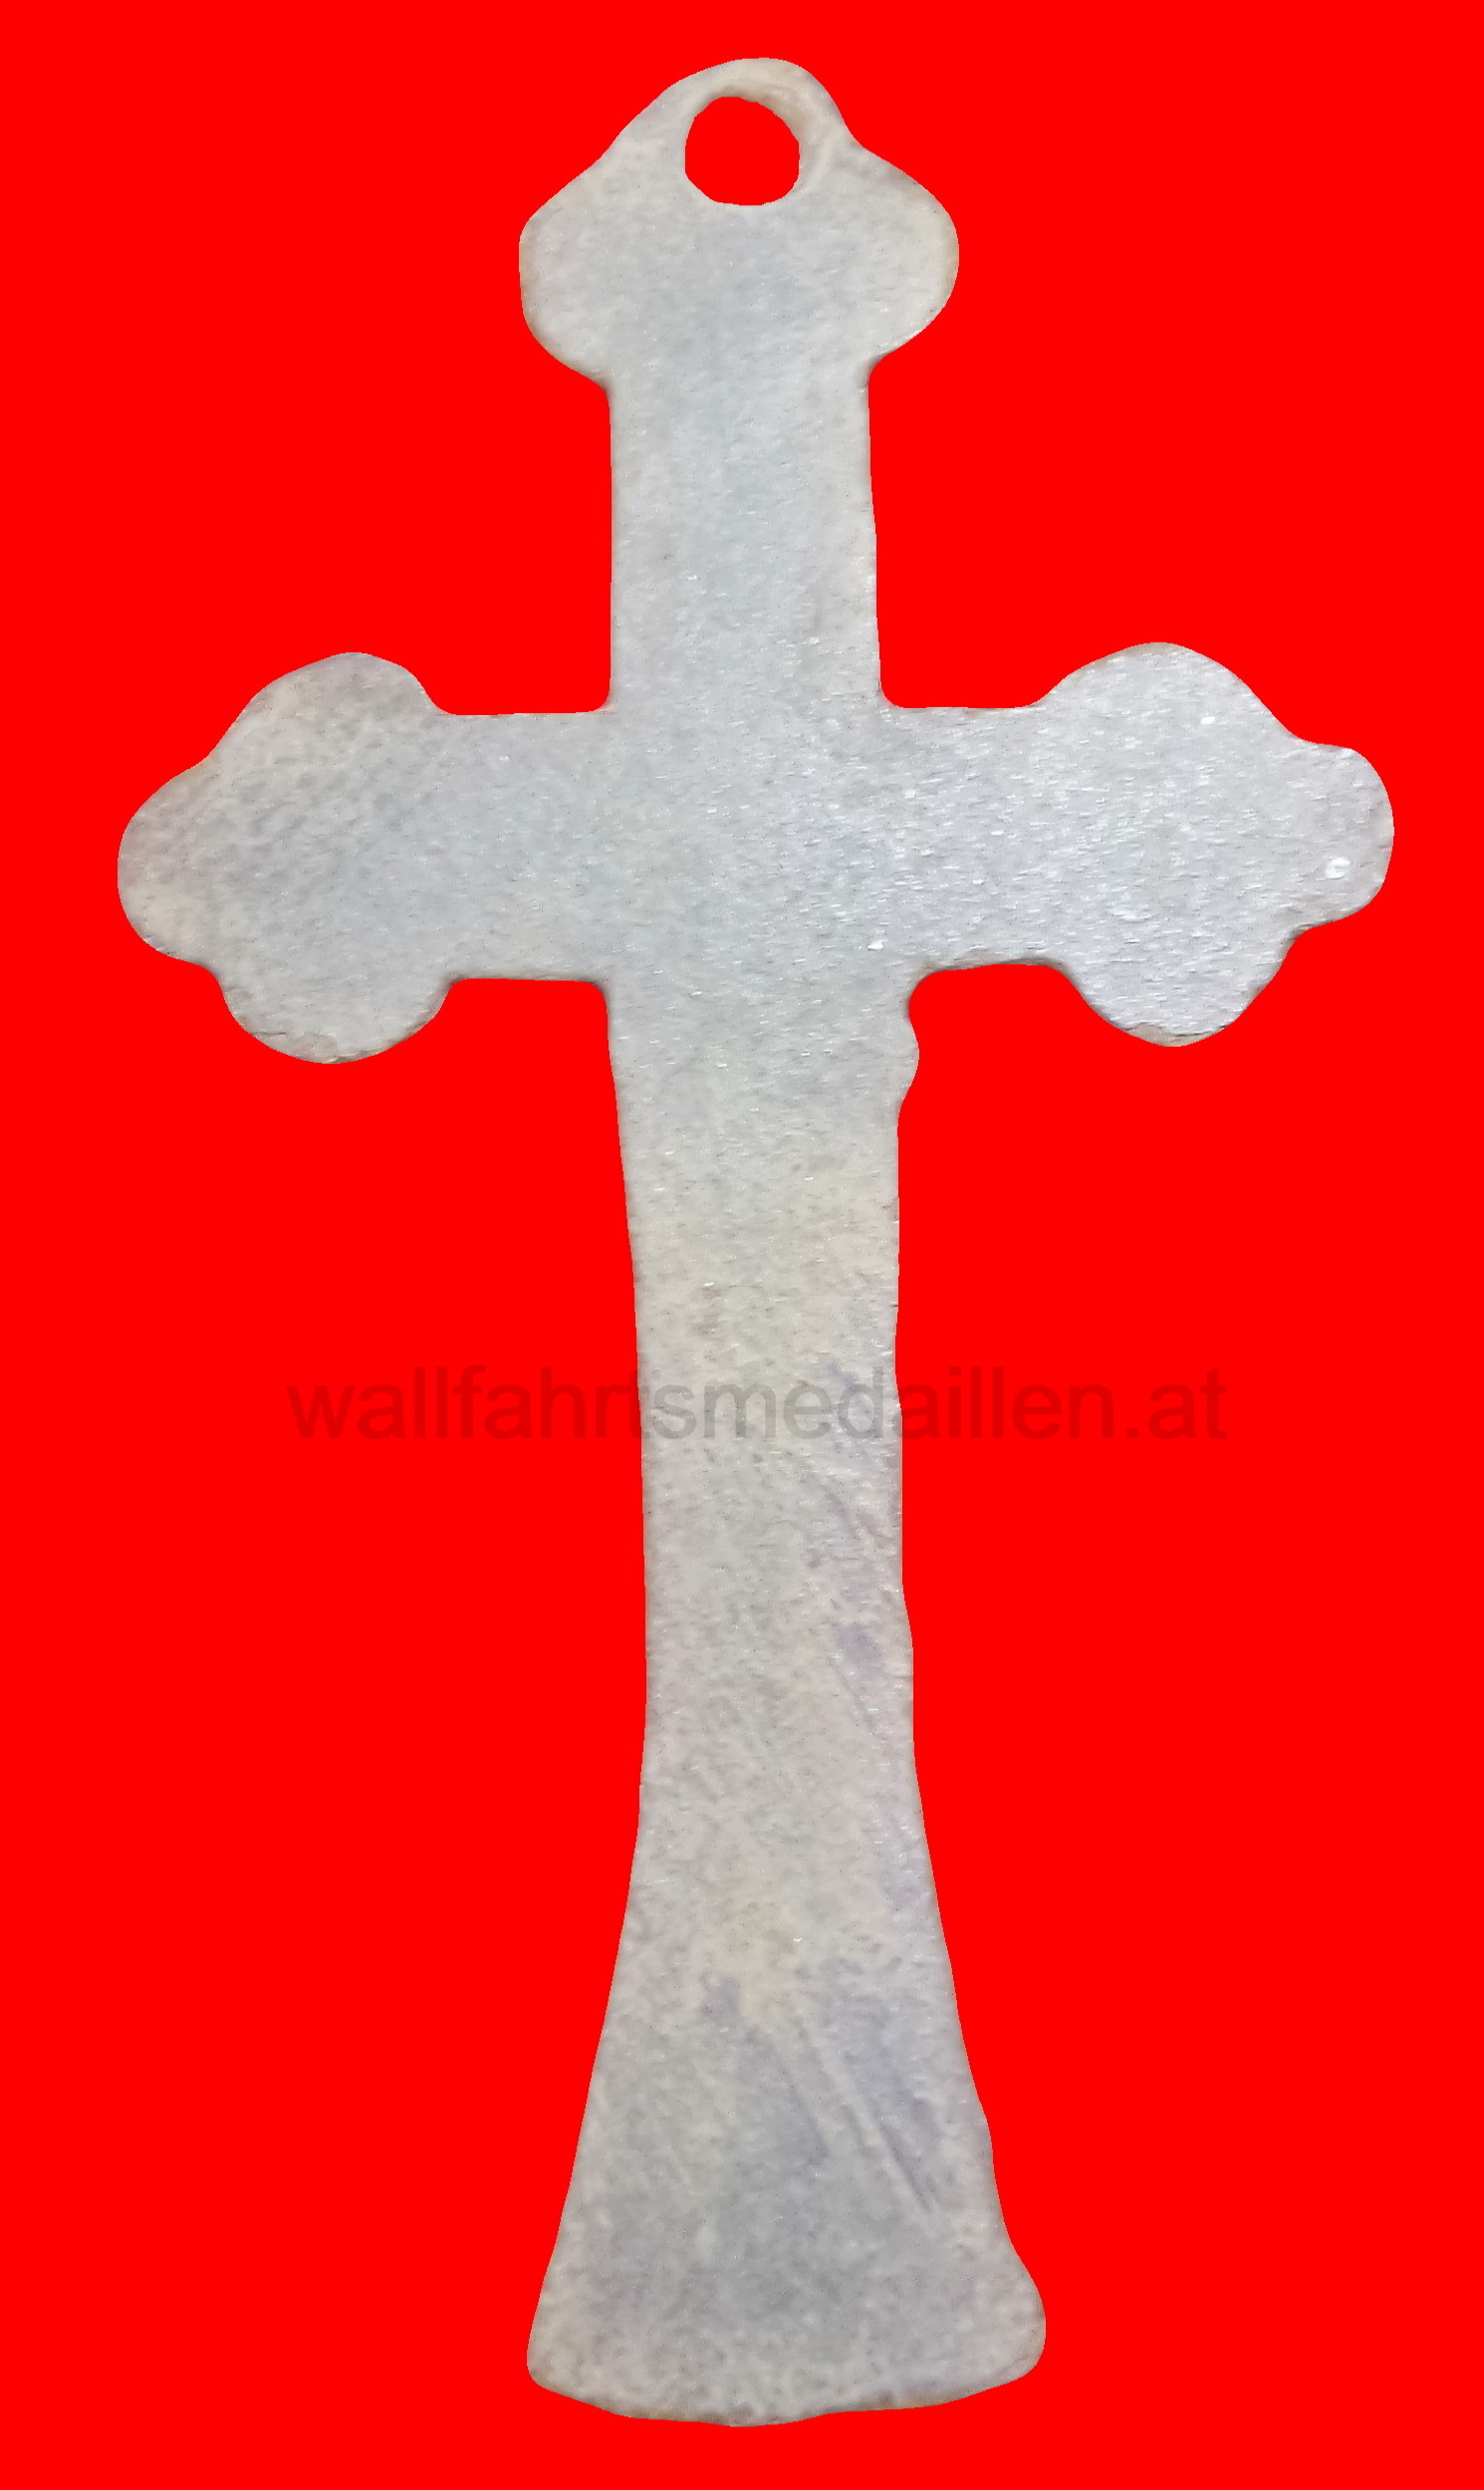 Wallfahrtskreuz aus Mariazell